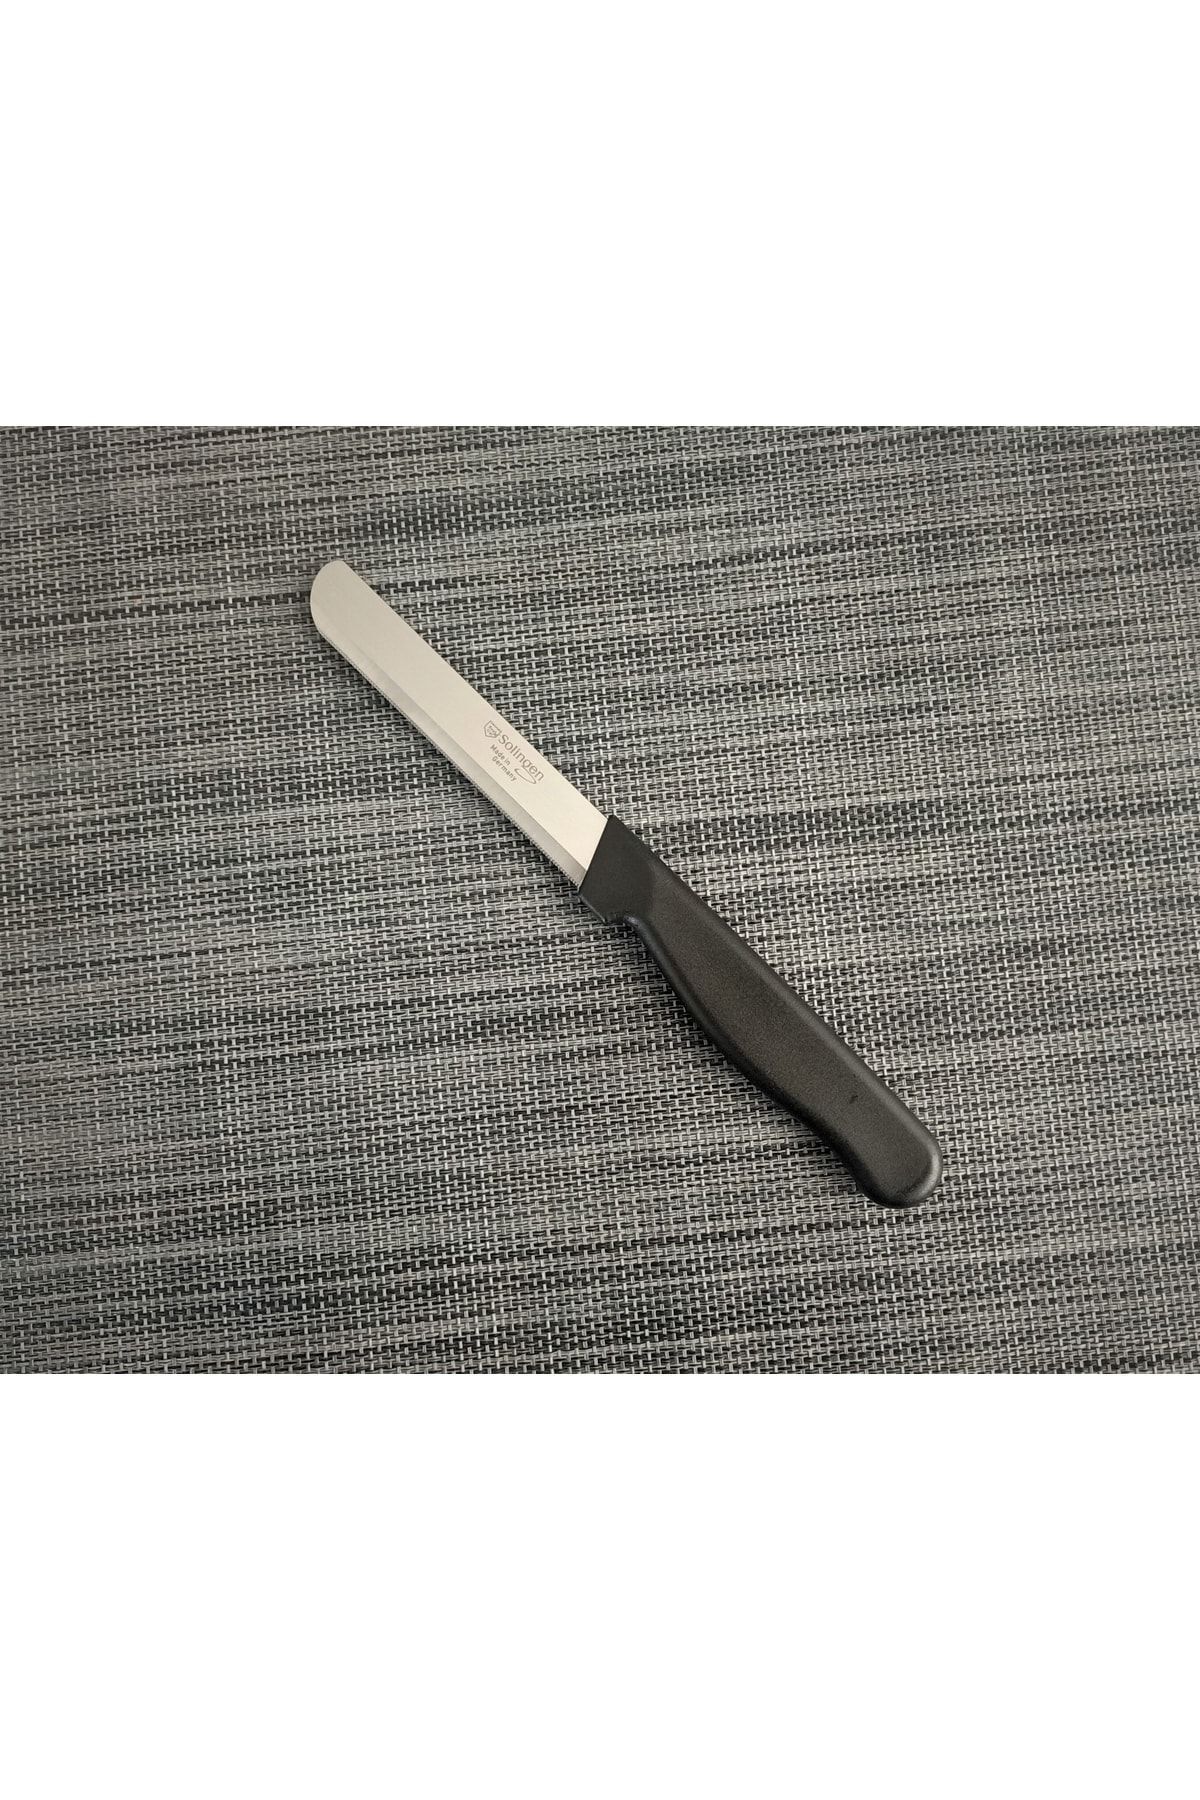 Solingen Micro Sebze Doğrama Bıçağı Siyah